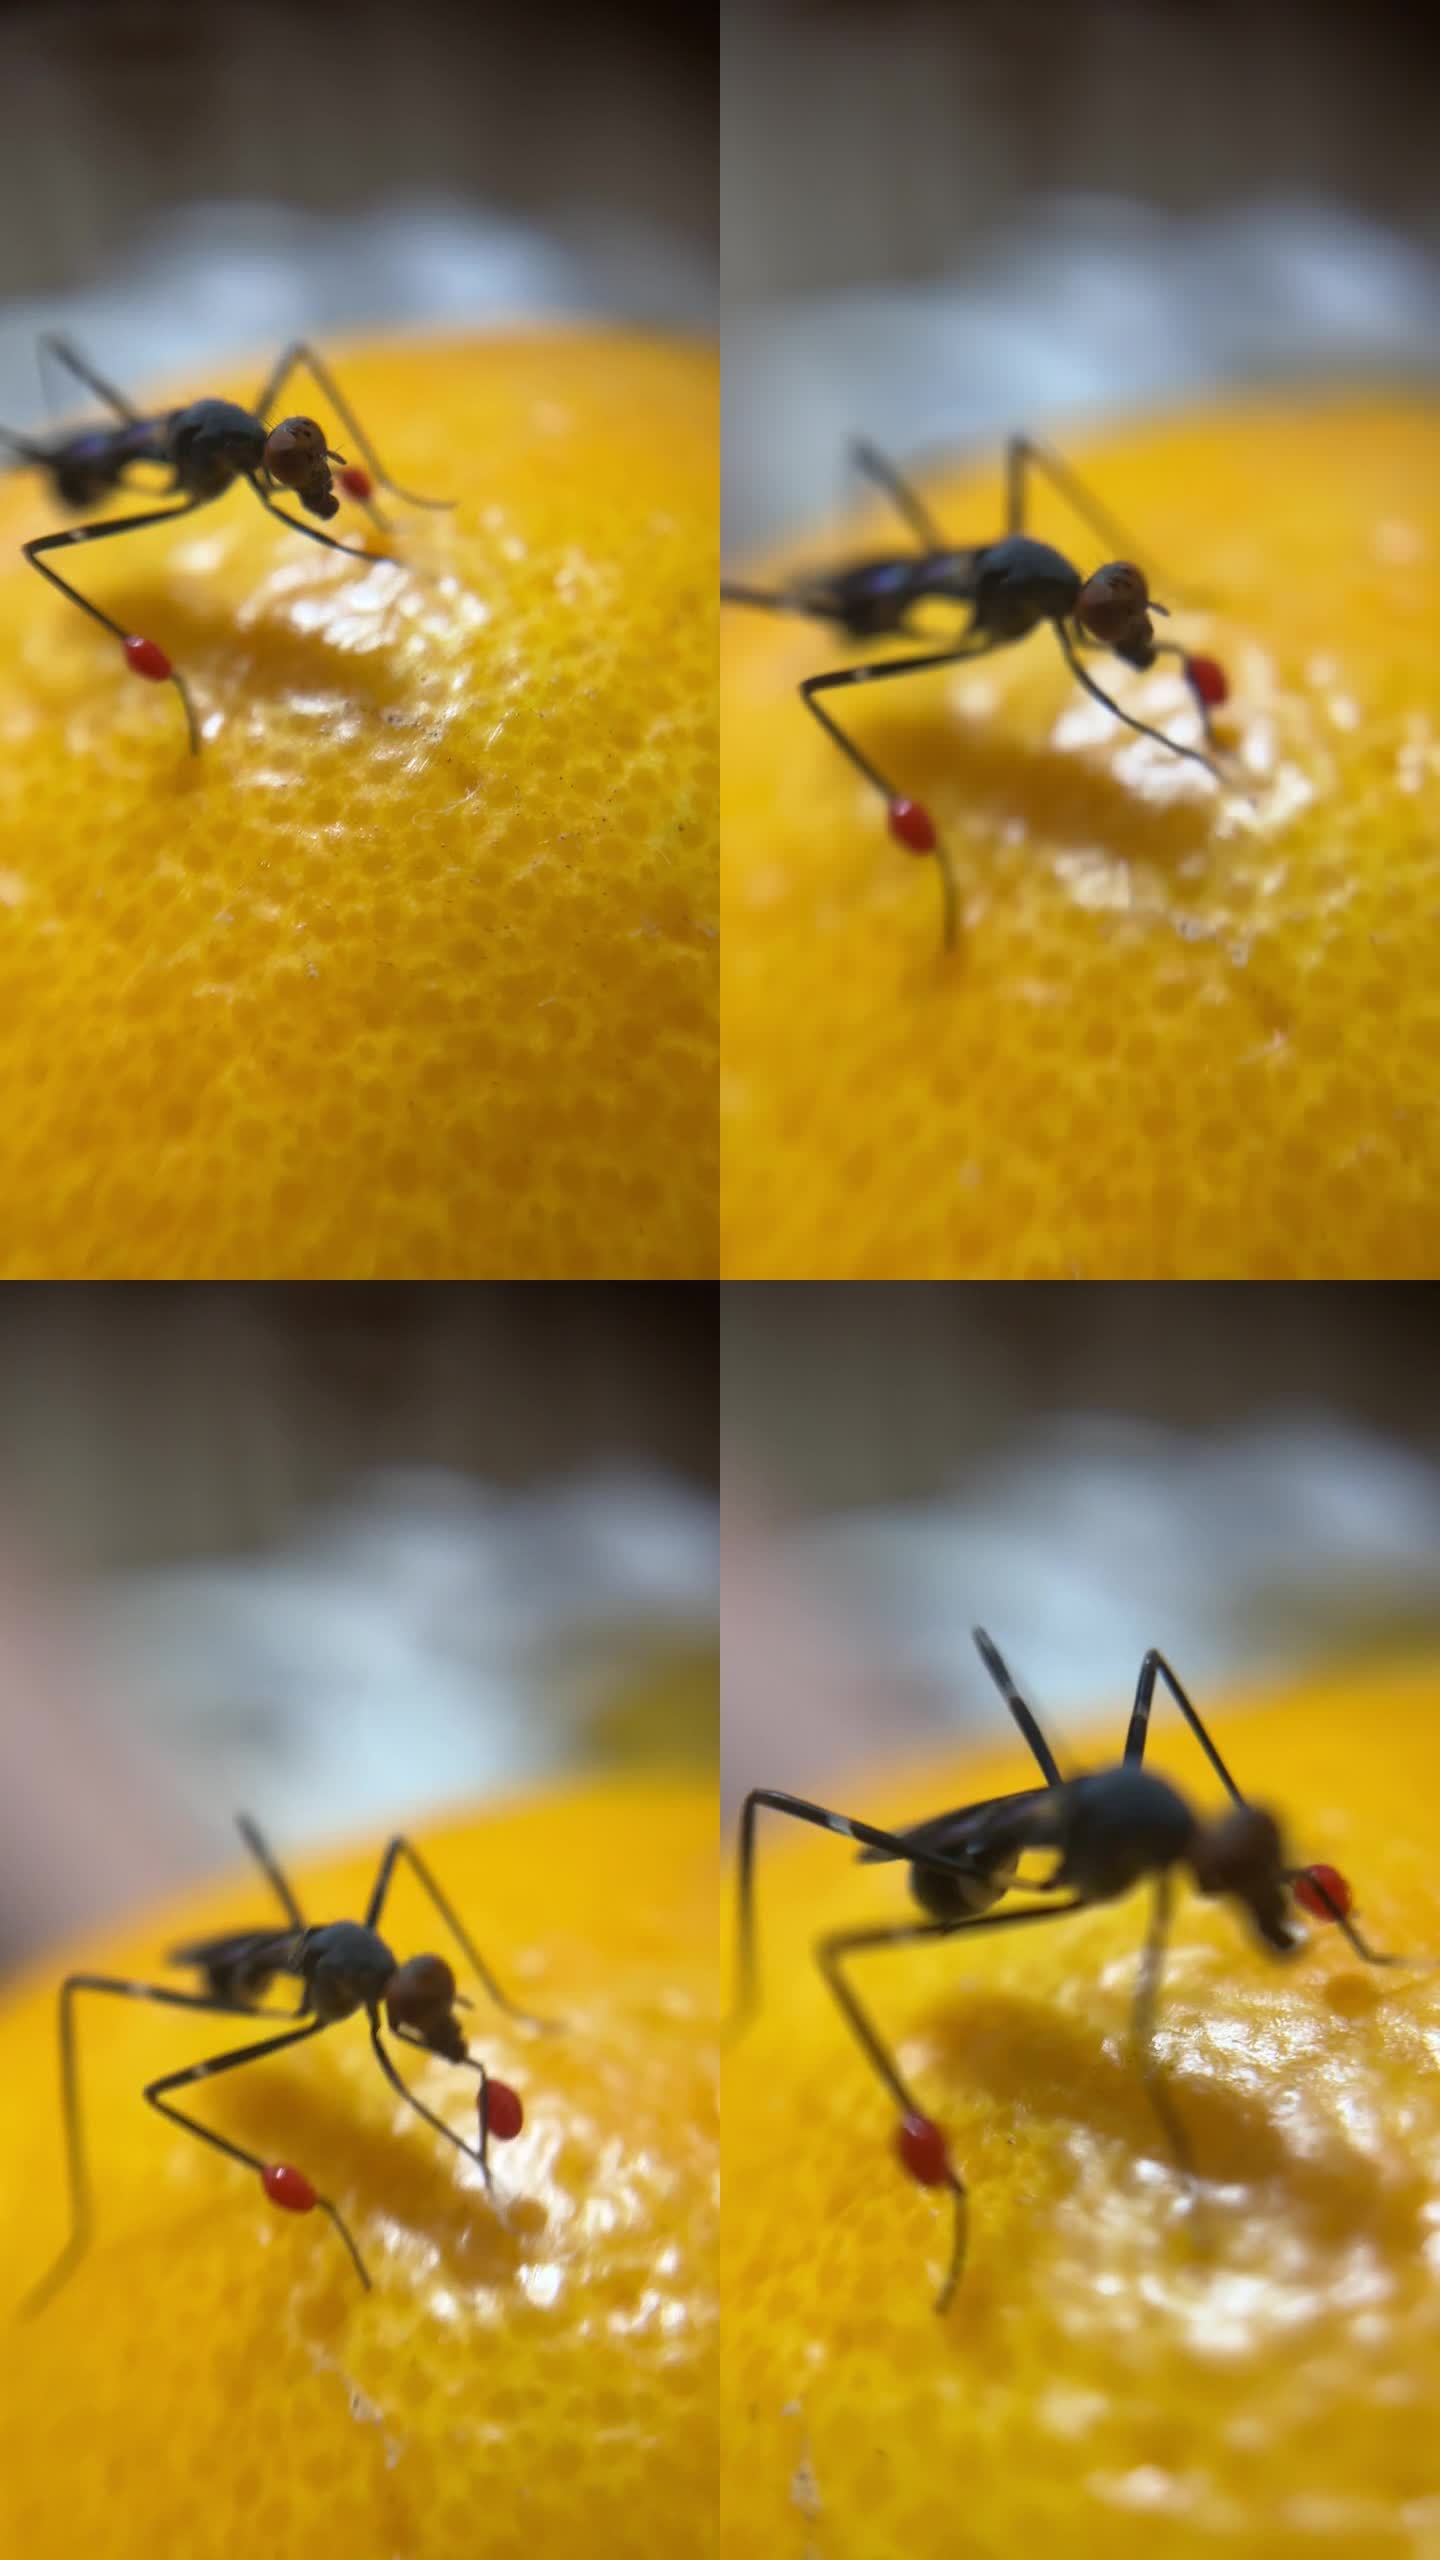 爪子上有红球的蚊子在一个橙色的微距视频上